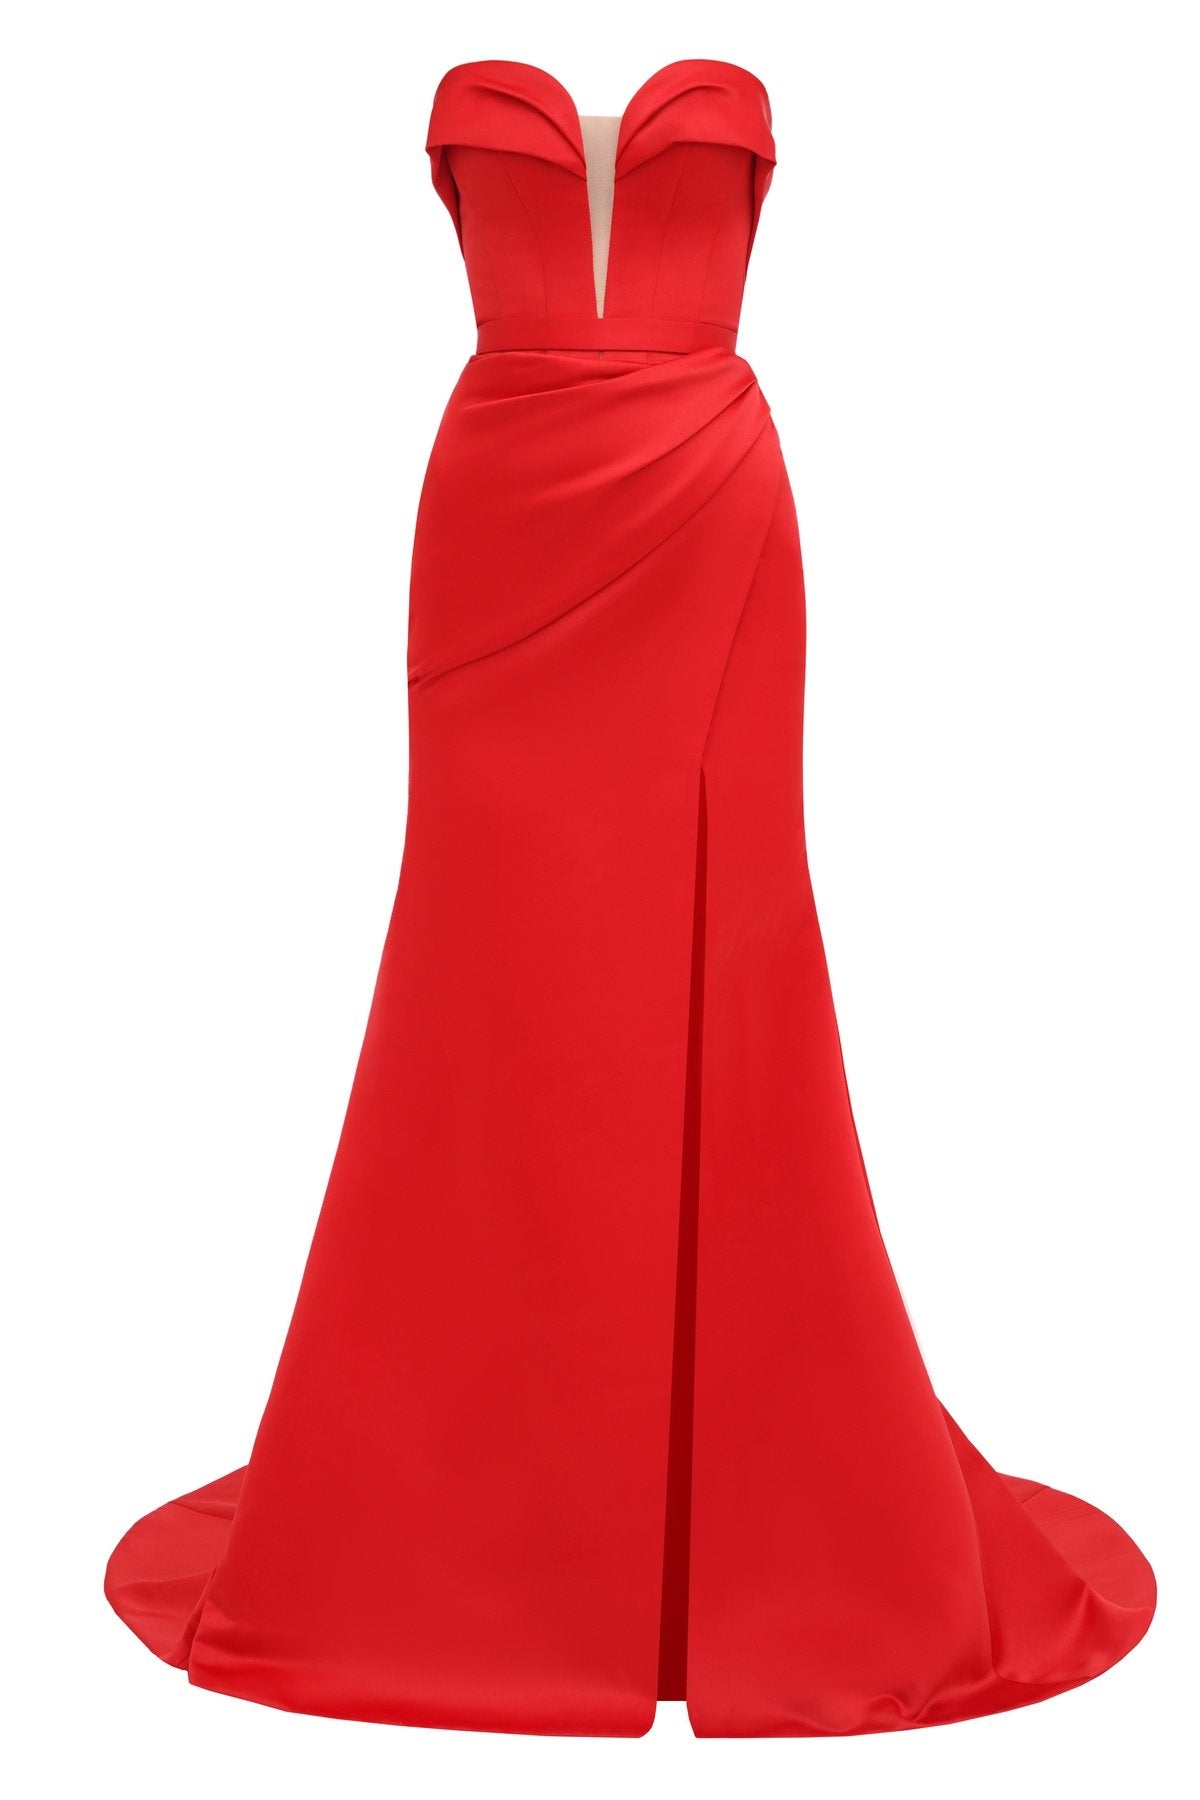 Olyamak 960: Scarlet Siren Mermaid Gown